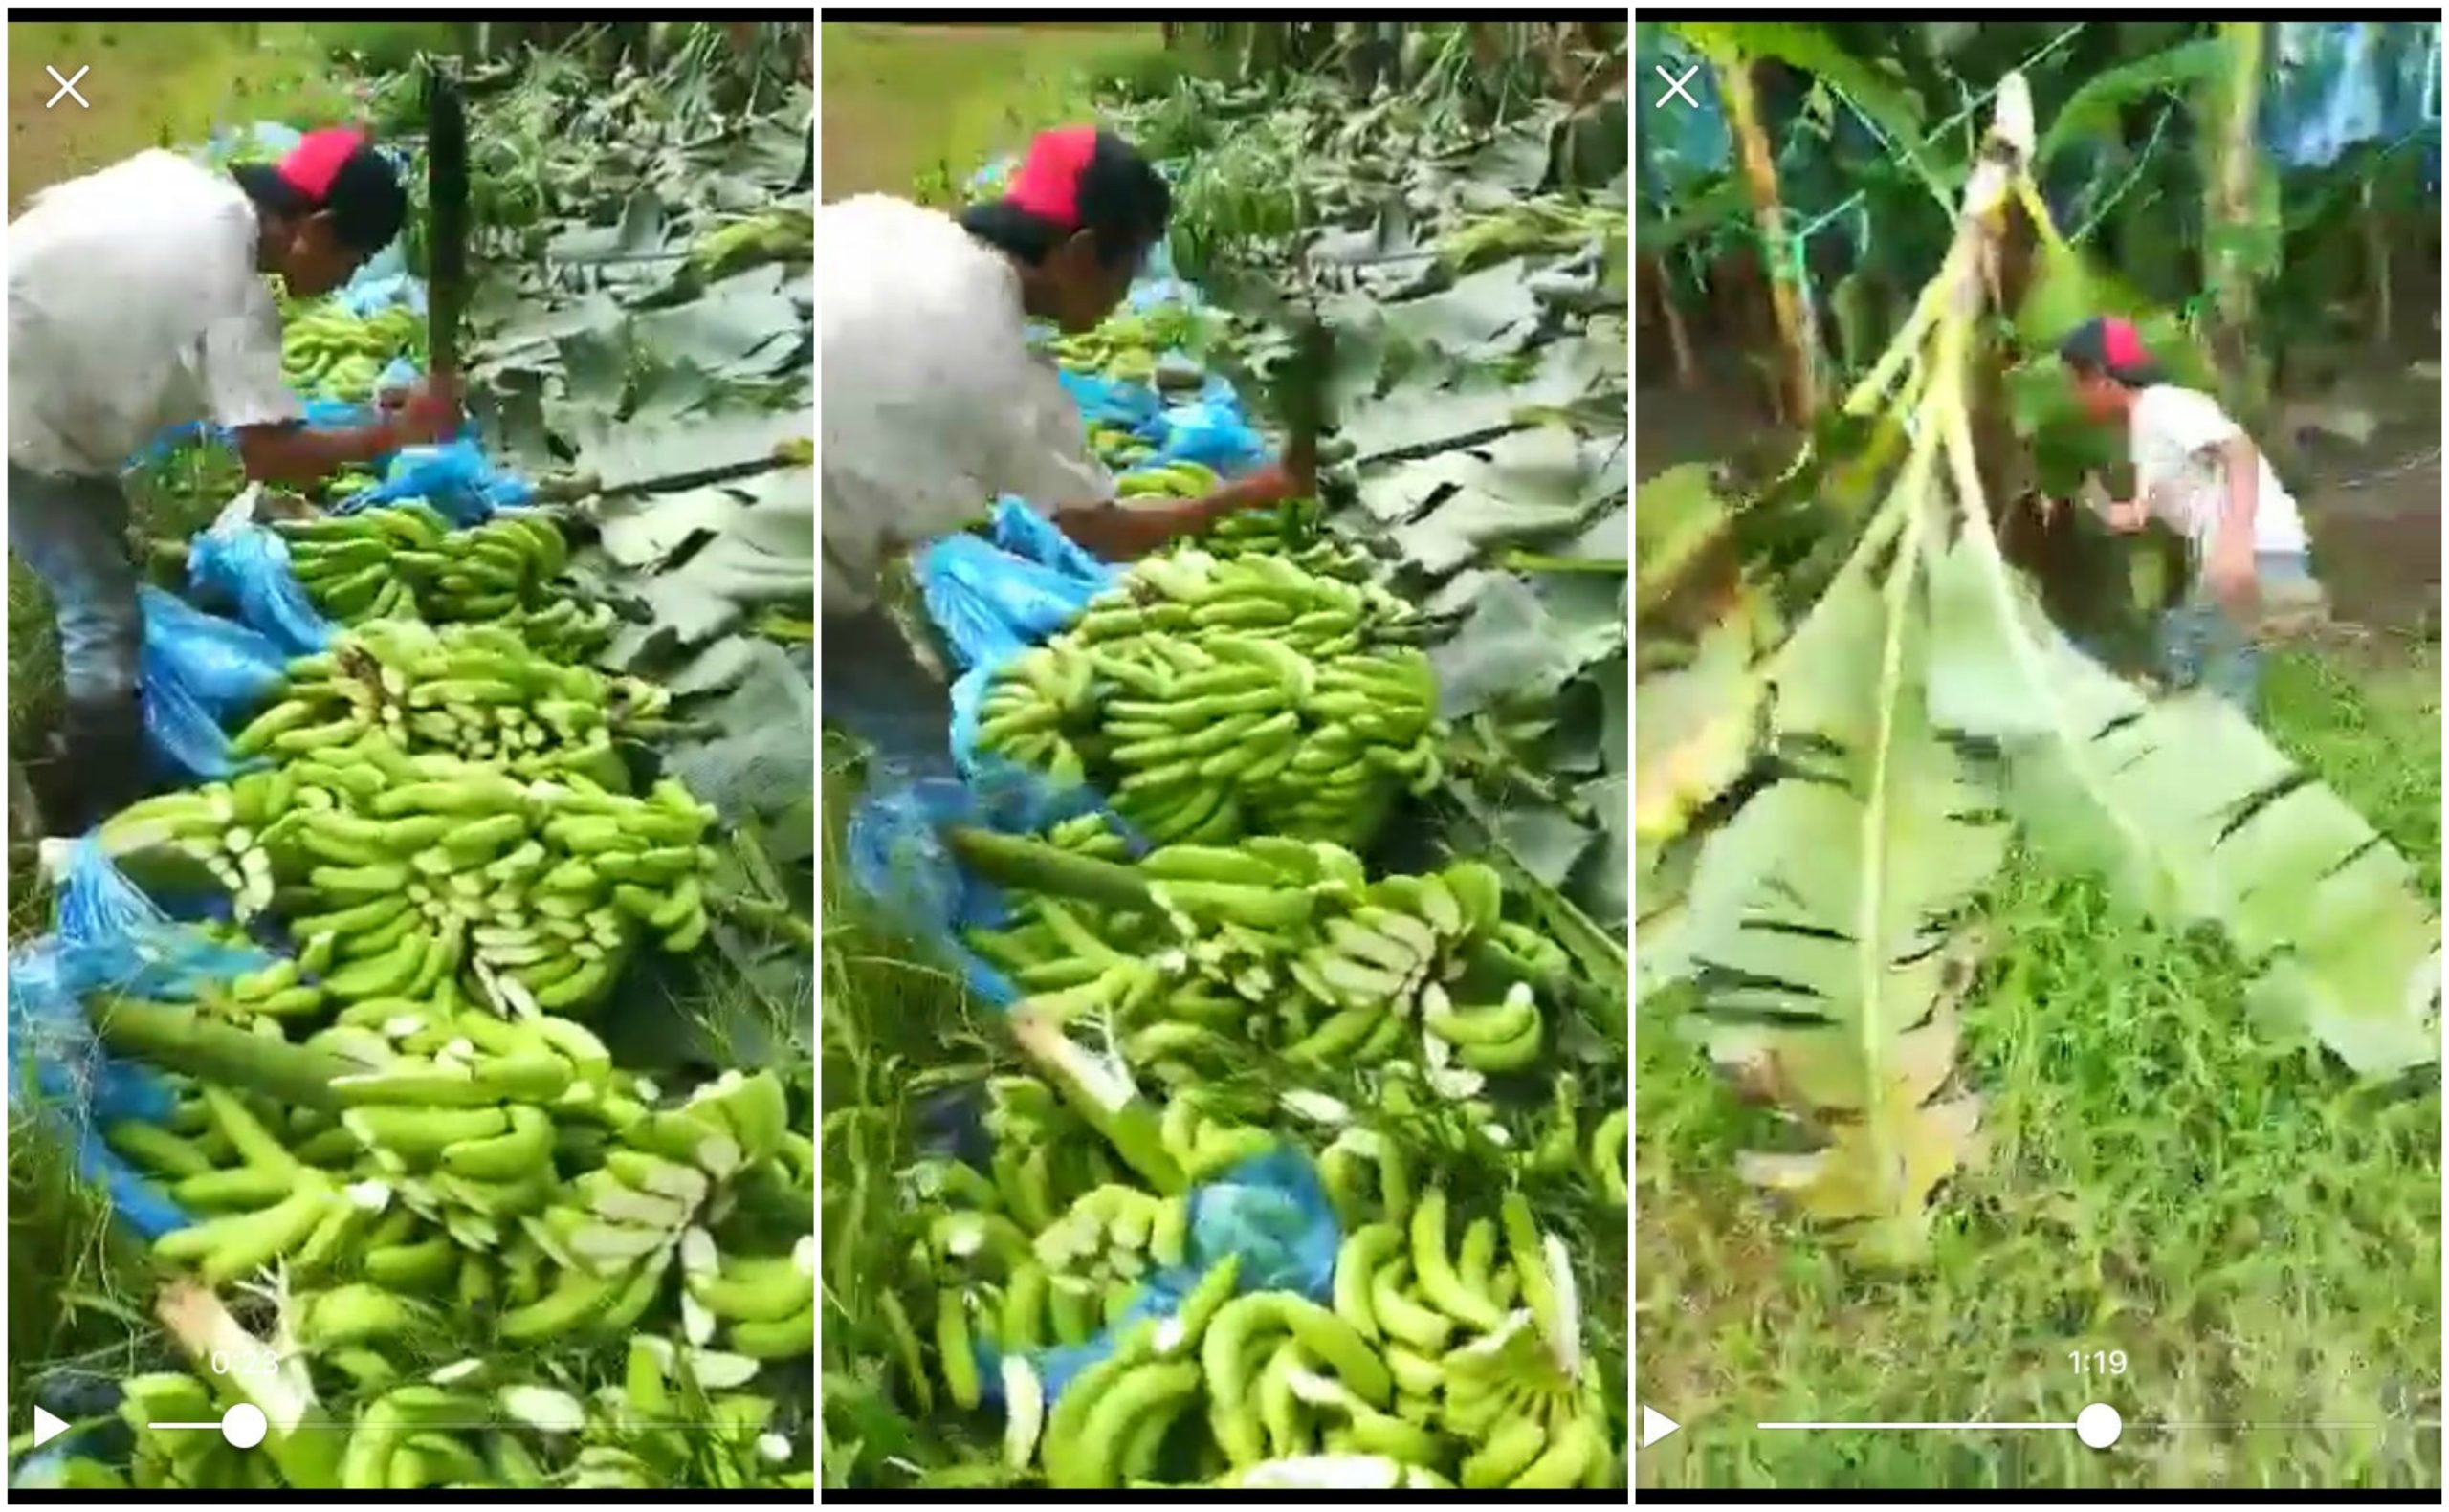 [VIDEO] Protes Pisang Tak Laku, Petani Nekad Musnahkan Semua Pisang Di Kebun